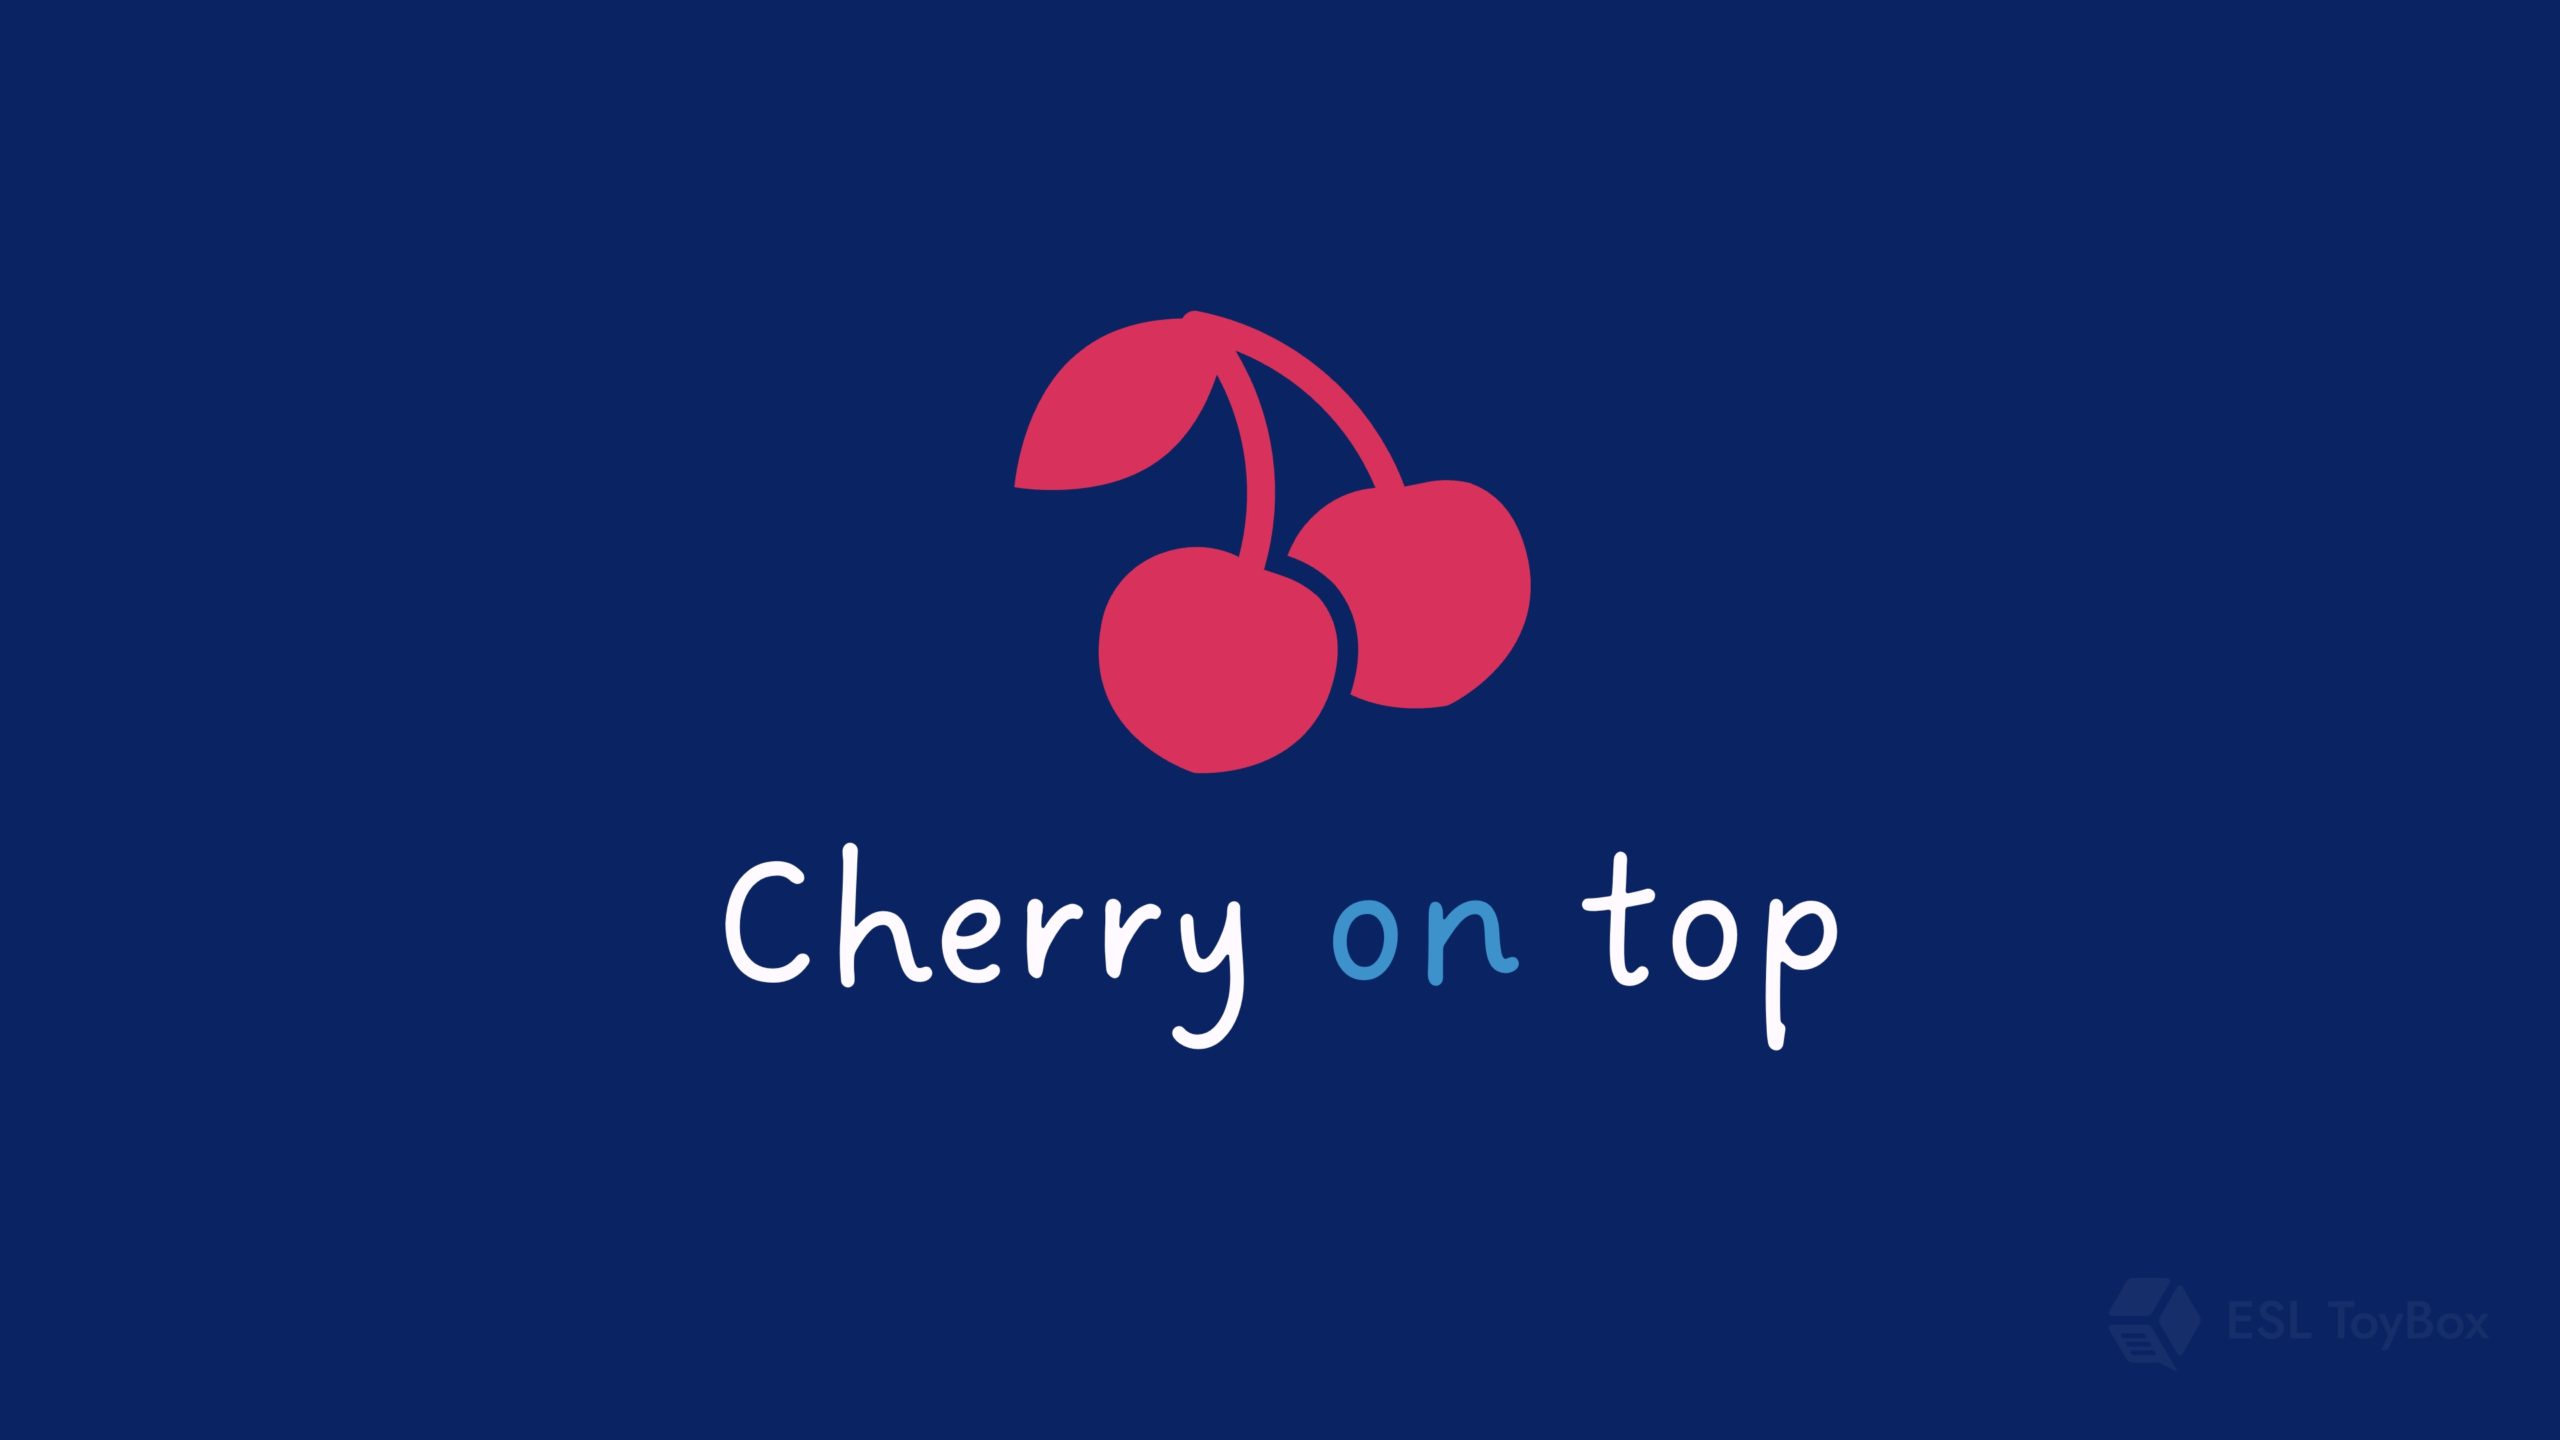 Cherry on Top